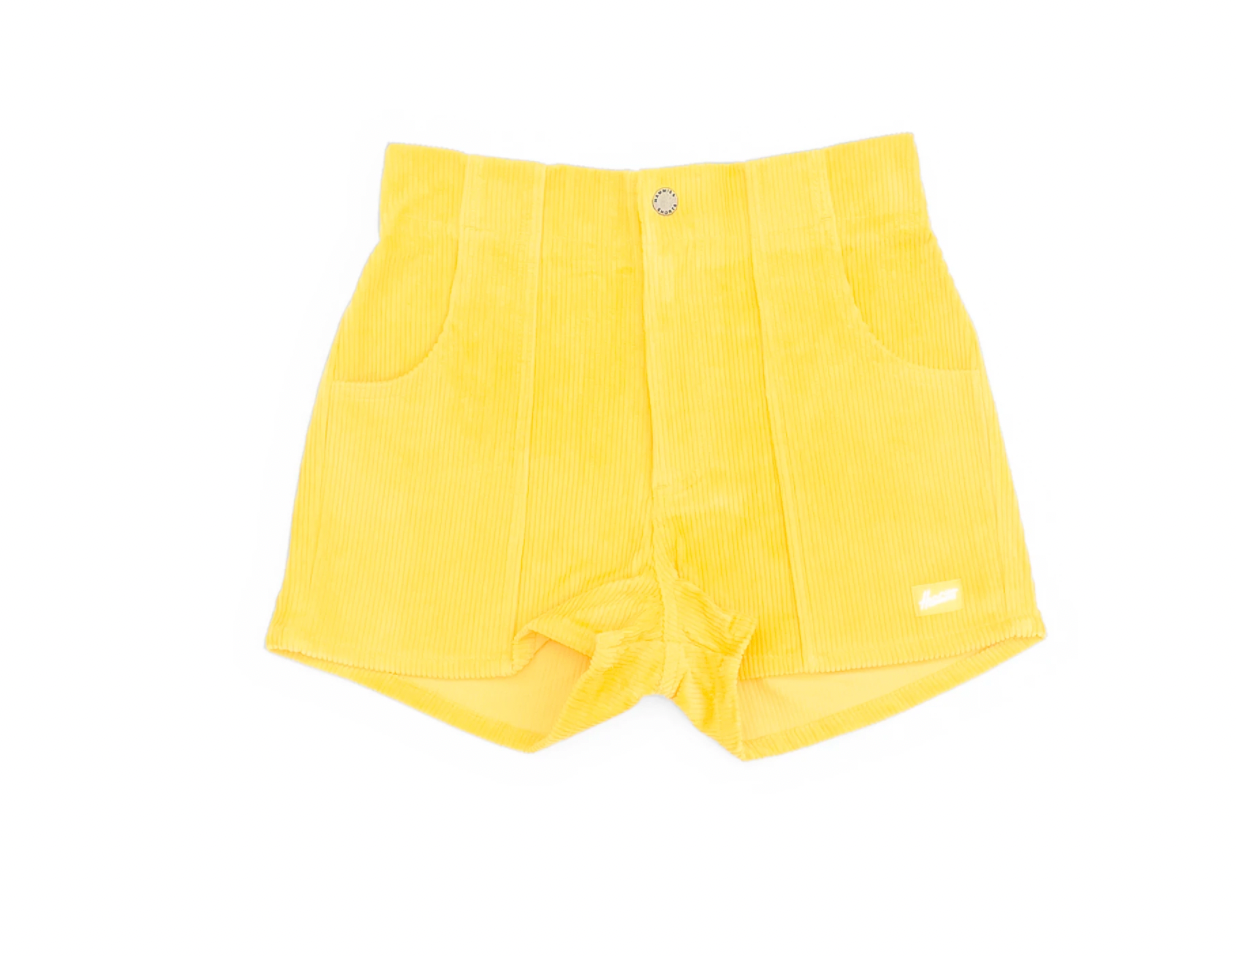 Hammies Short - Yellow